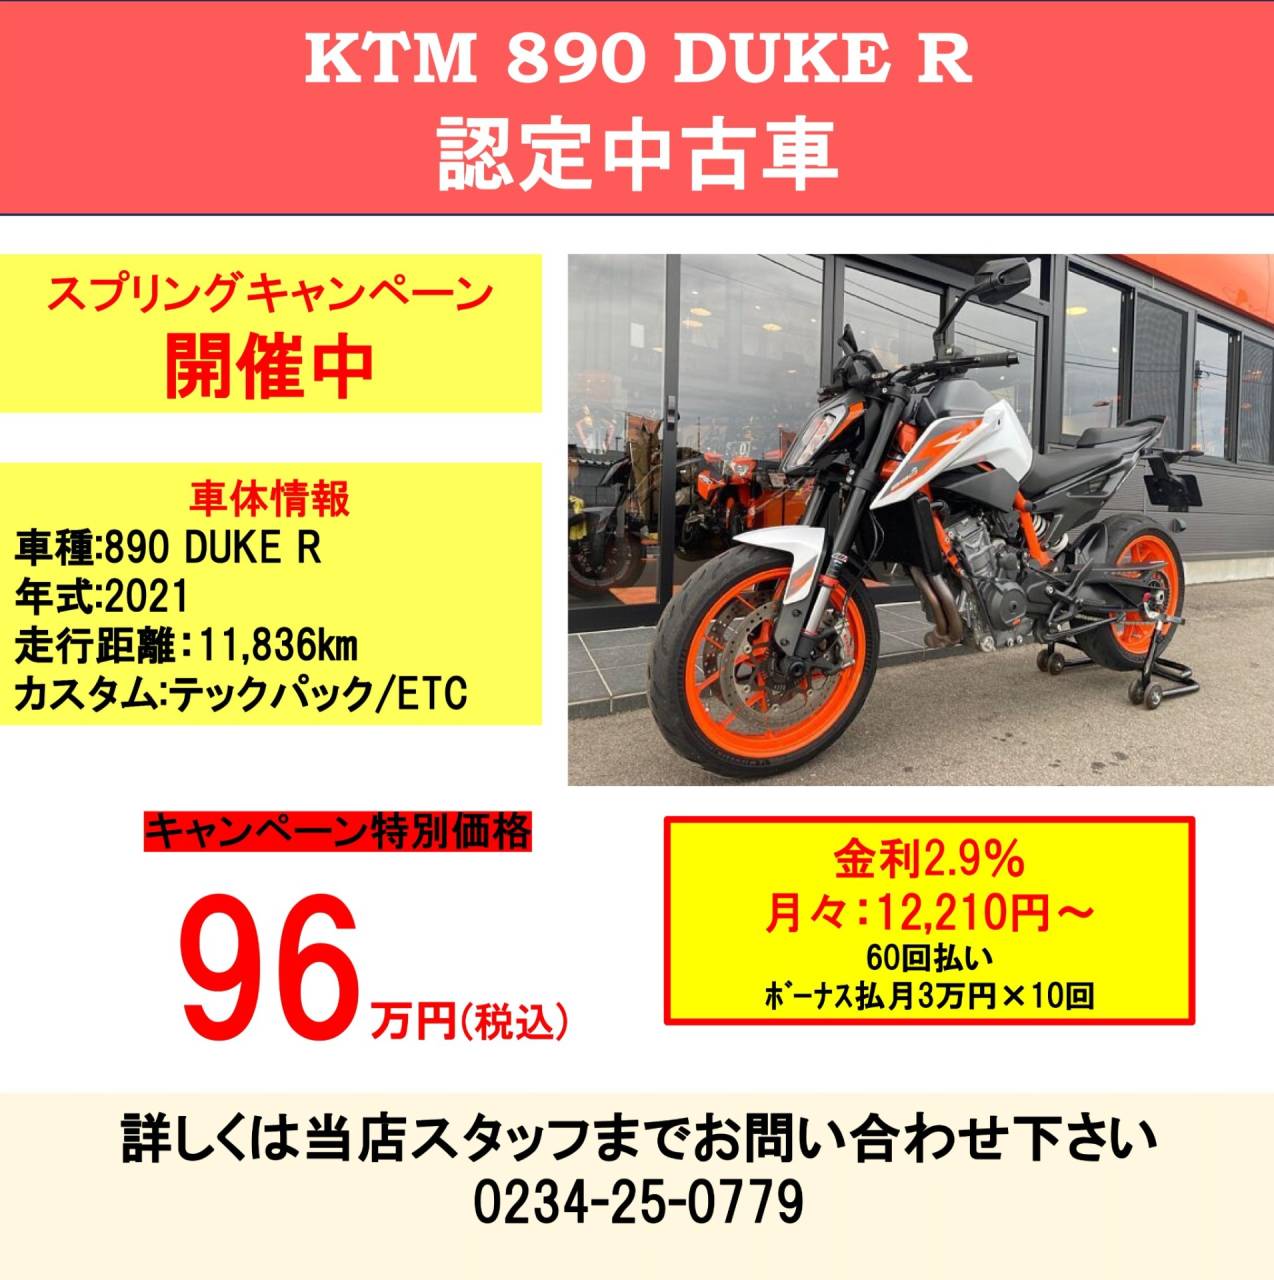 KTM 890 DUKE R 認定中古車 フェア開催中 KTM山形